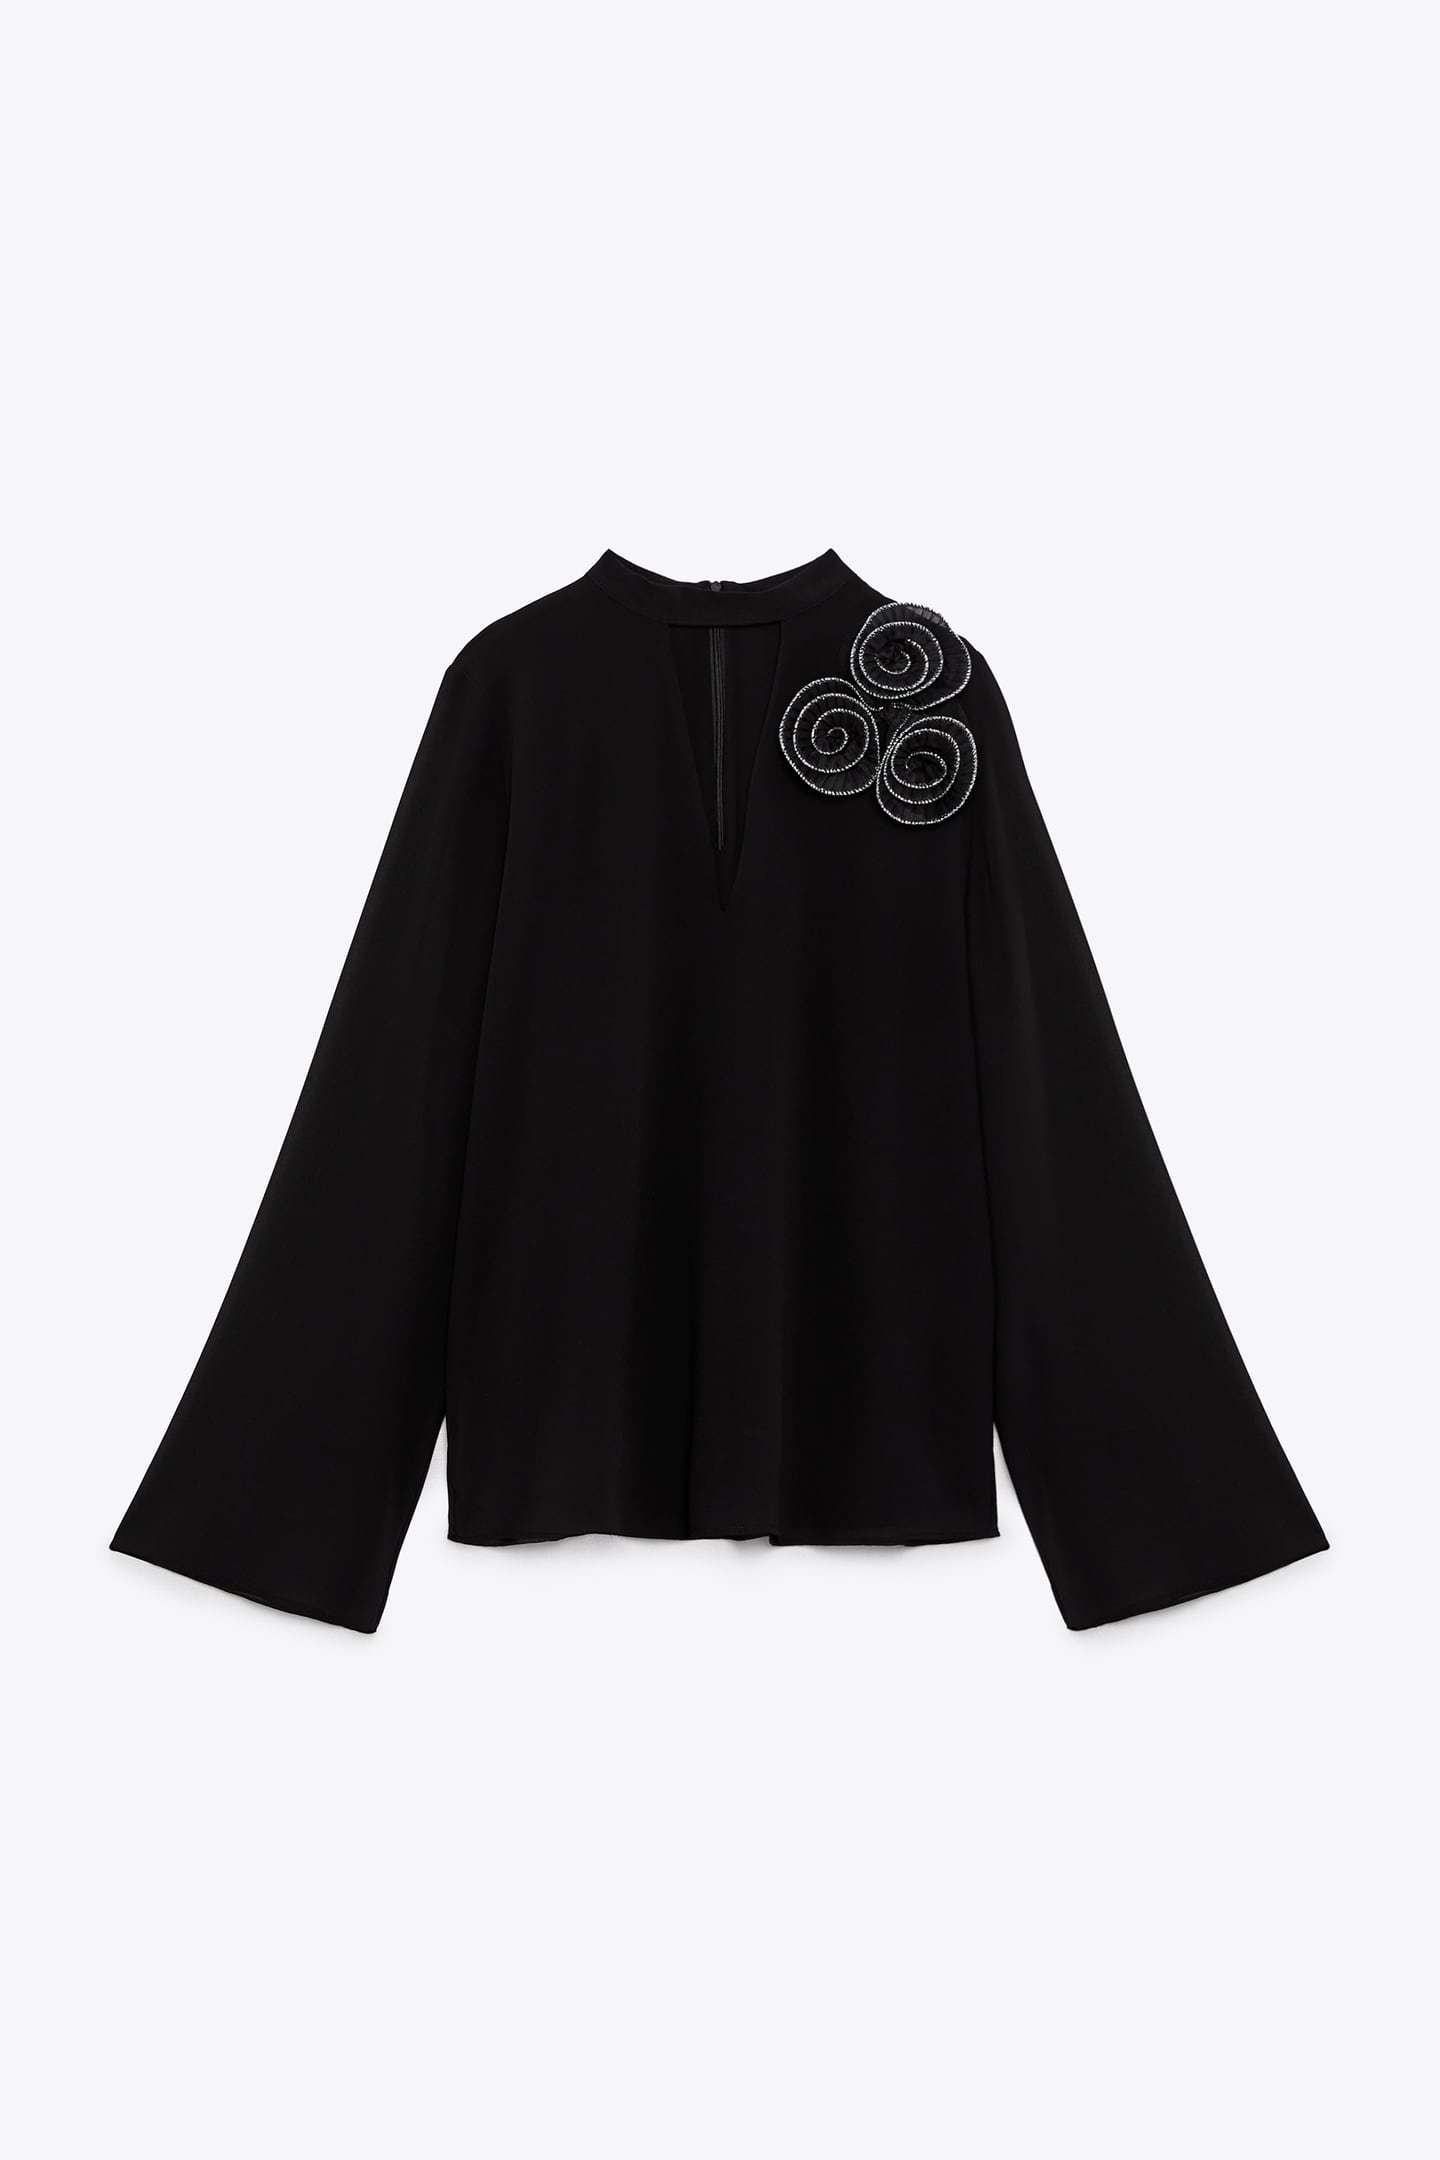 Blusa negra con flores en el hombro, de Zara.